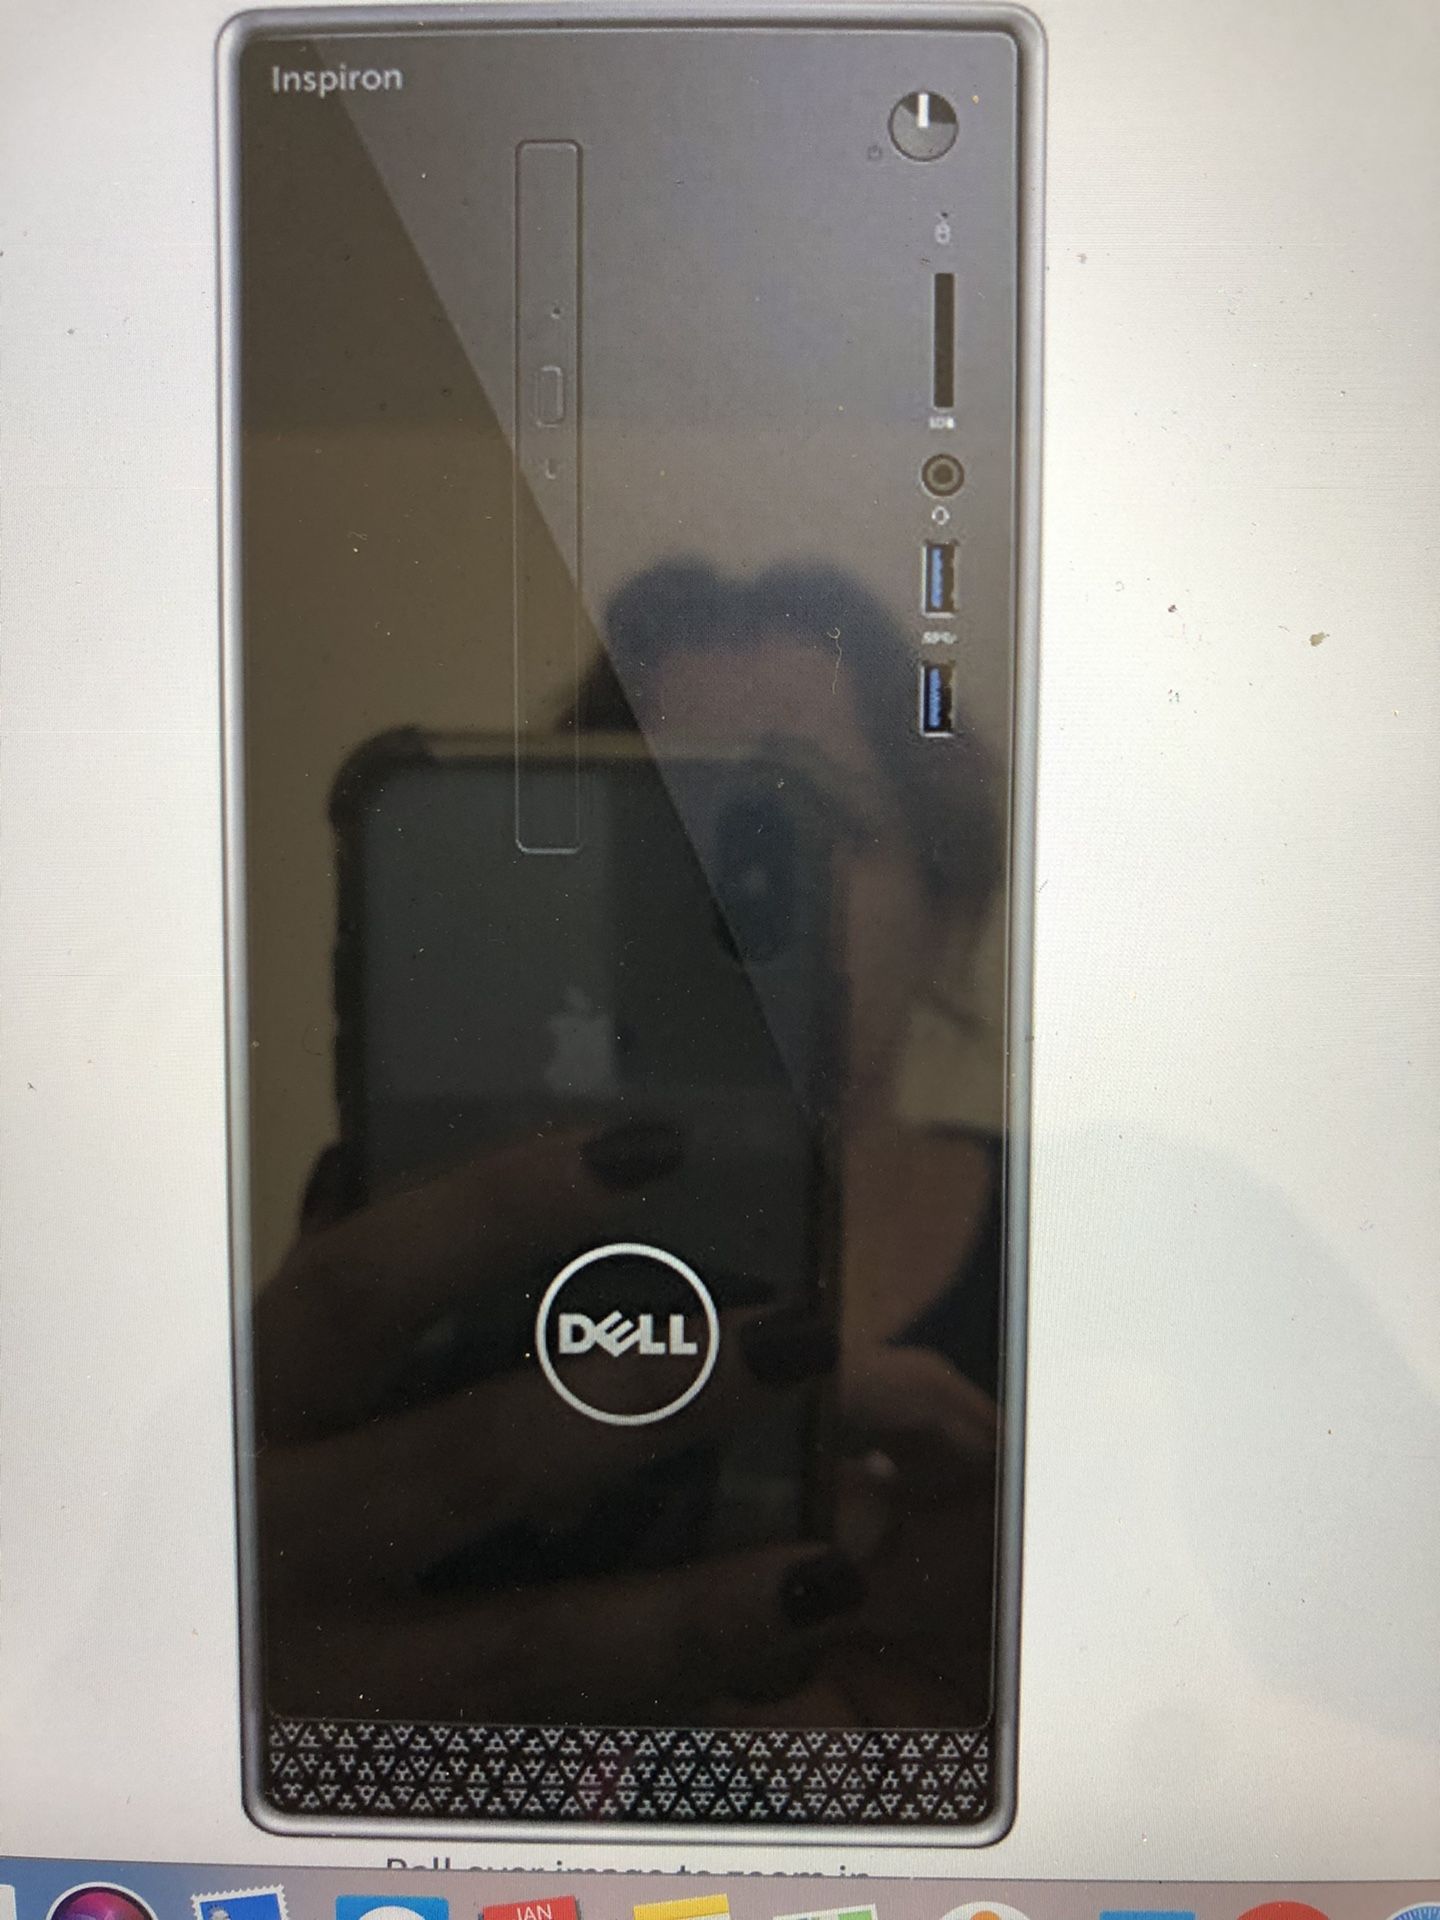 Dell Inspiron desktop